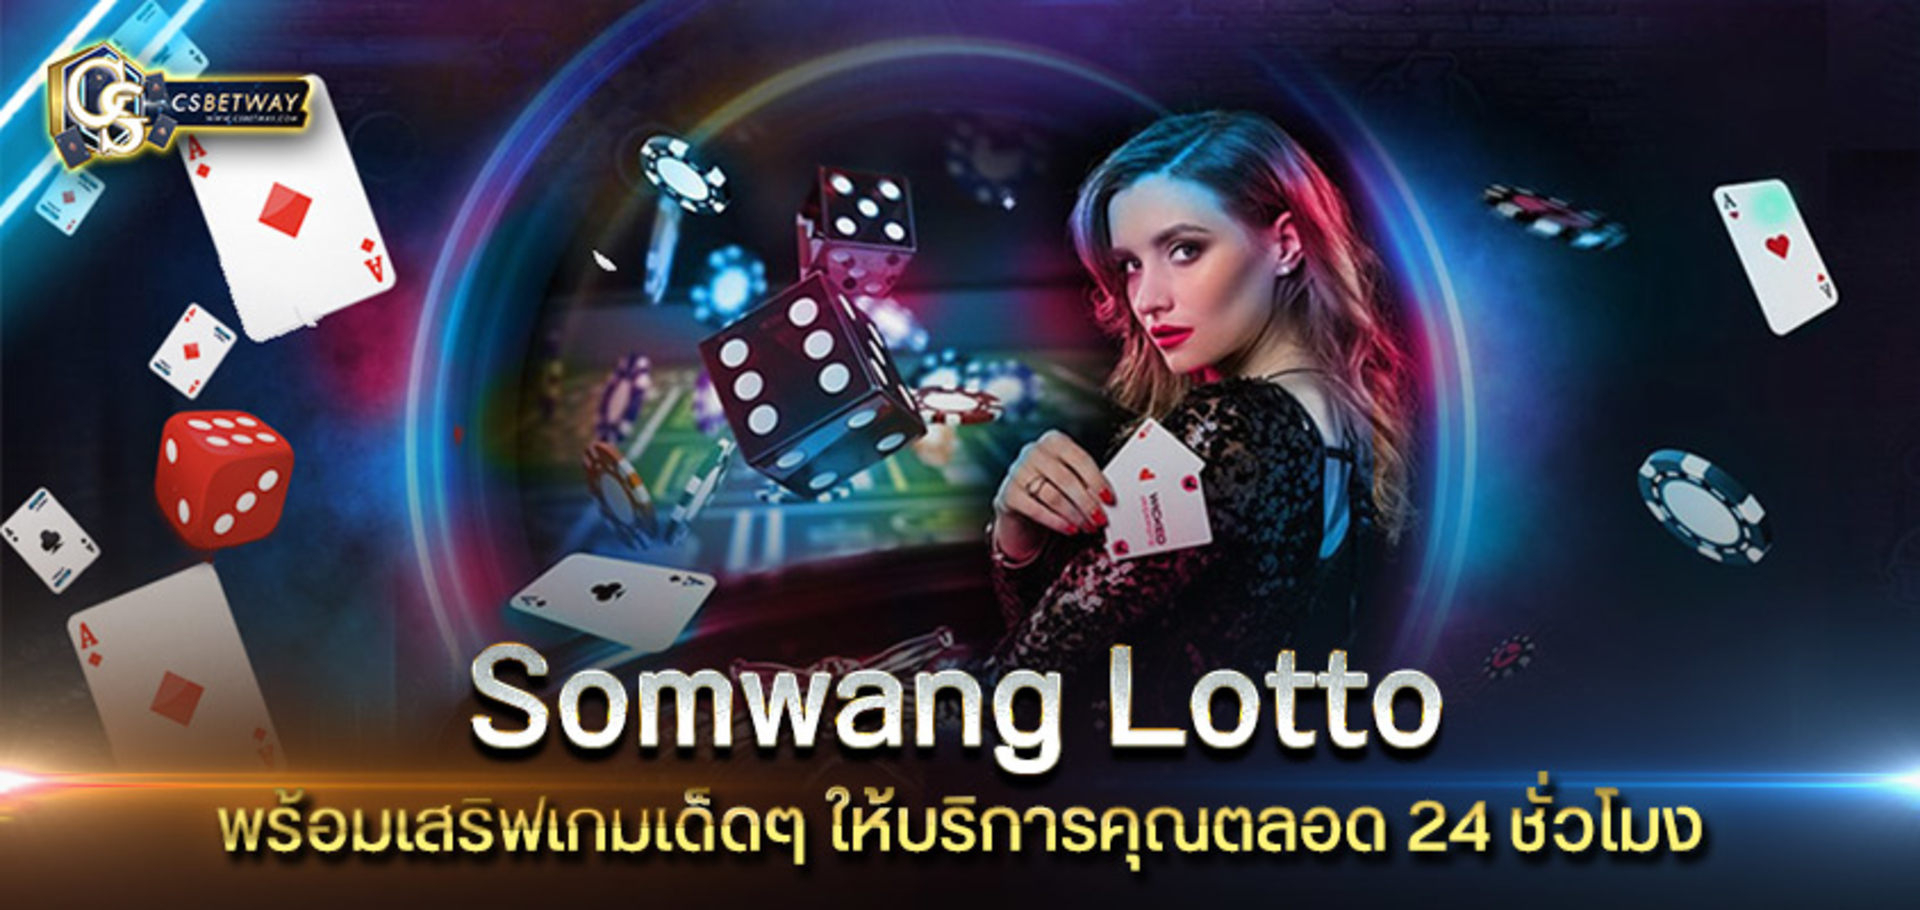 Somwang Lotto เปิดให้บริการเกมสล็อตแล้ว พร้อมเสริฟเกมเด็ดๆ ให้บริการคุณตลอด 24 ชั่วโมง เกมสล็อตออนไลน์ เดิมพันออนไลน์